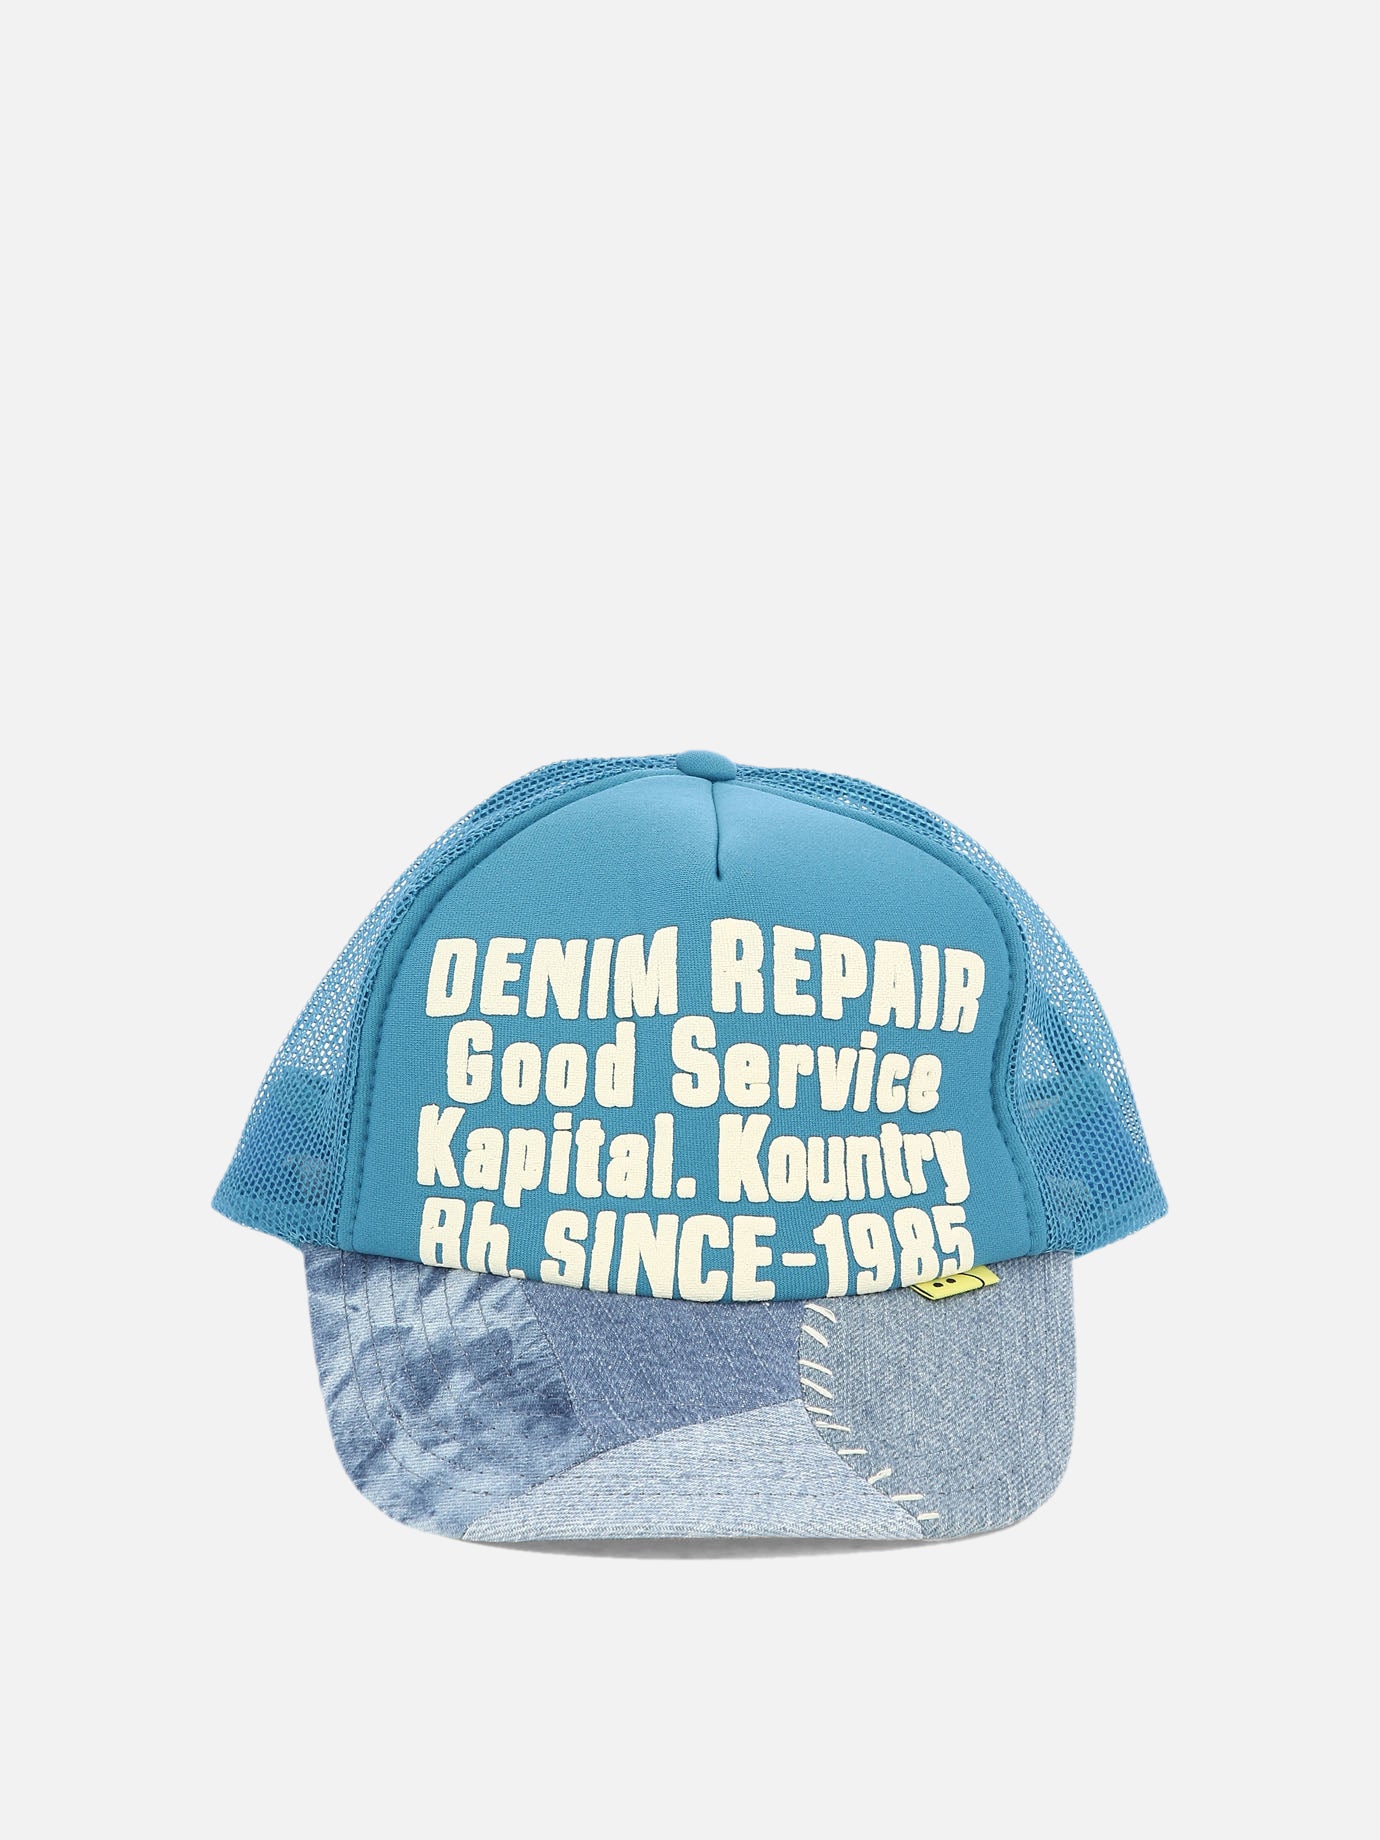 "Denim Repair Service Re-Construct" cap